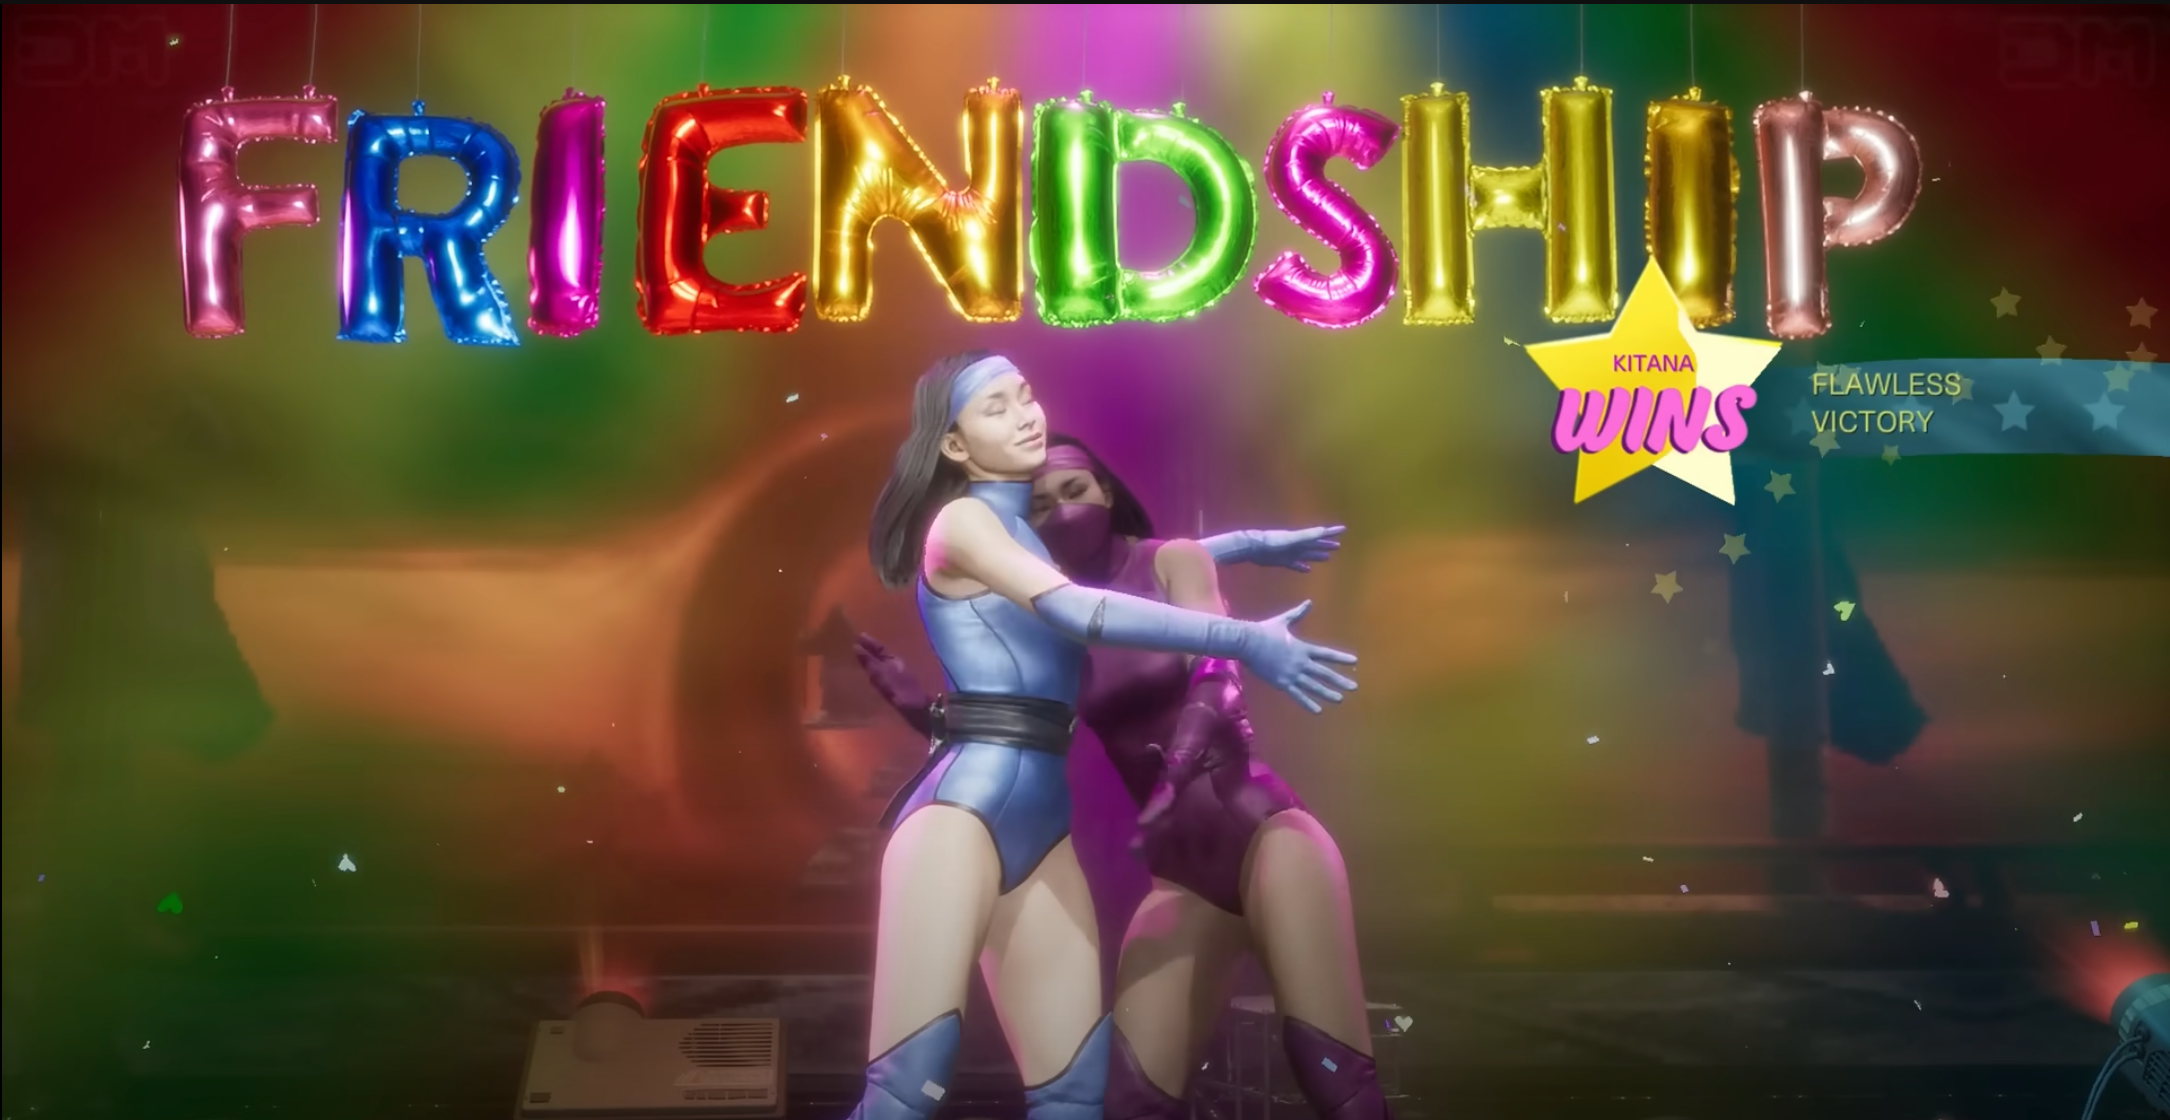 Kitana's Friendship in Mortal Kombat 11: Shown Hugging Mileena, her clone/adoptive sister